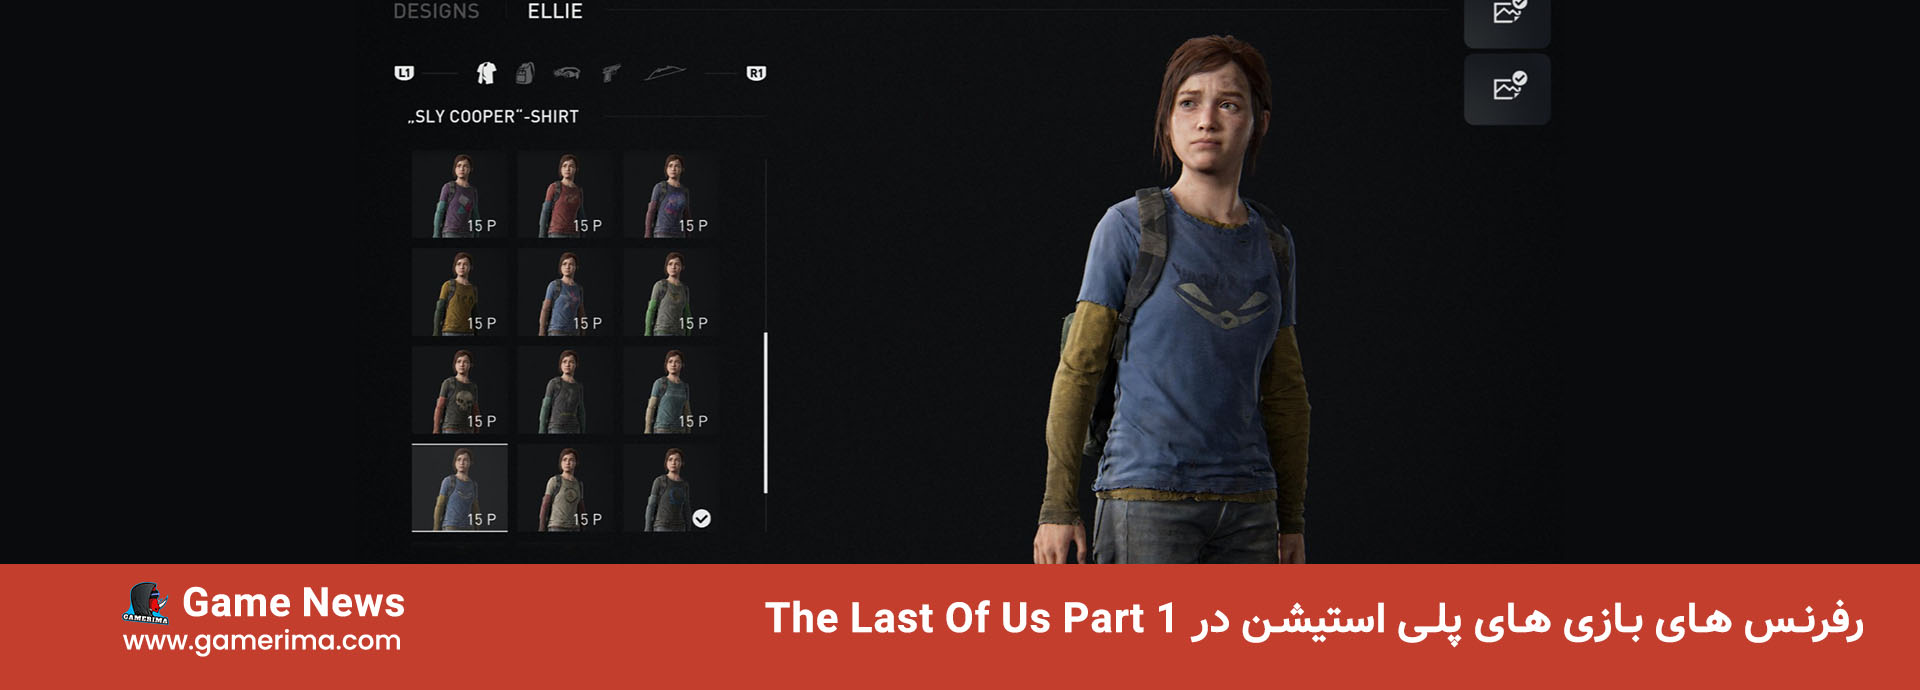 رفرنس های بازی های پلی استیشن در The Last Of Us Part 1